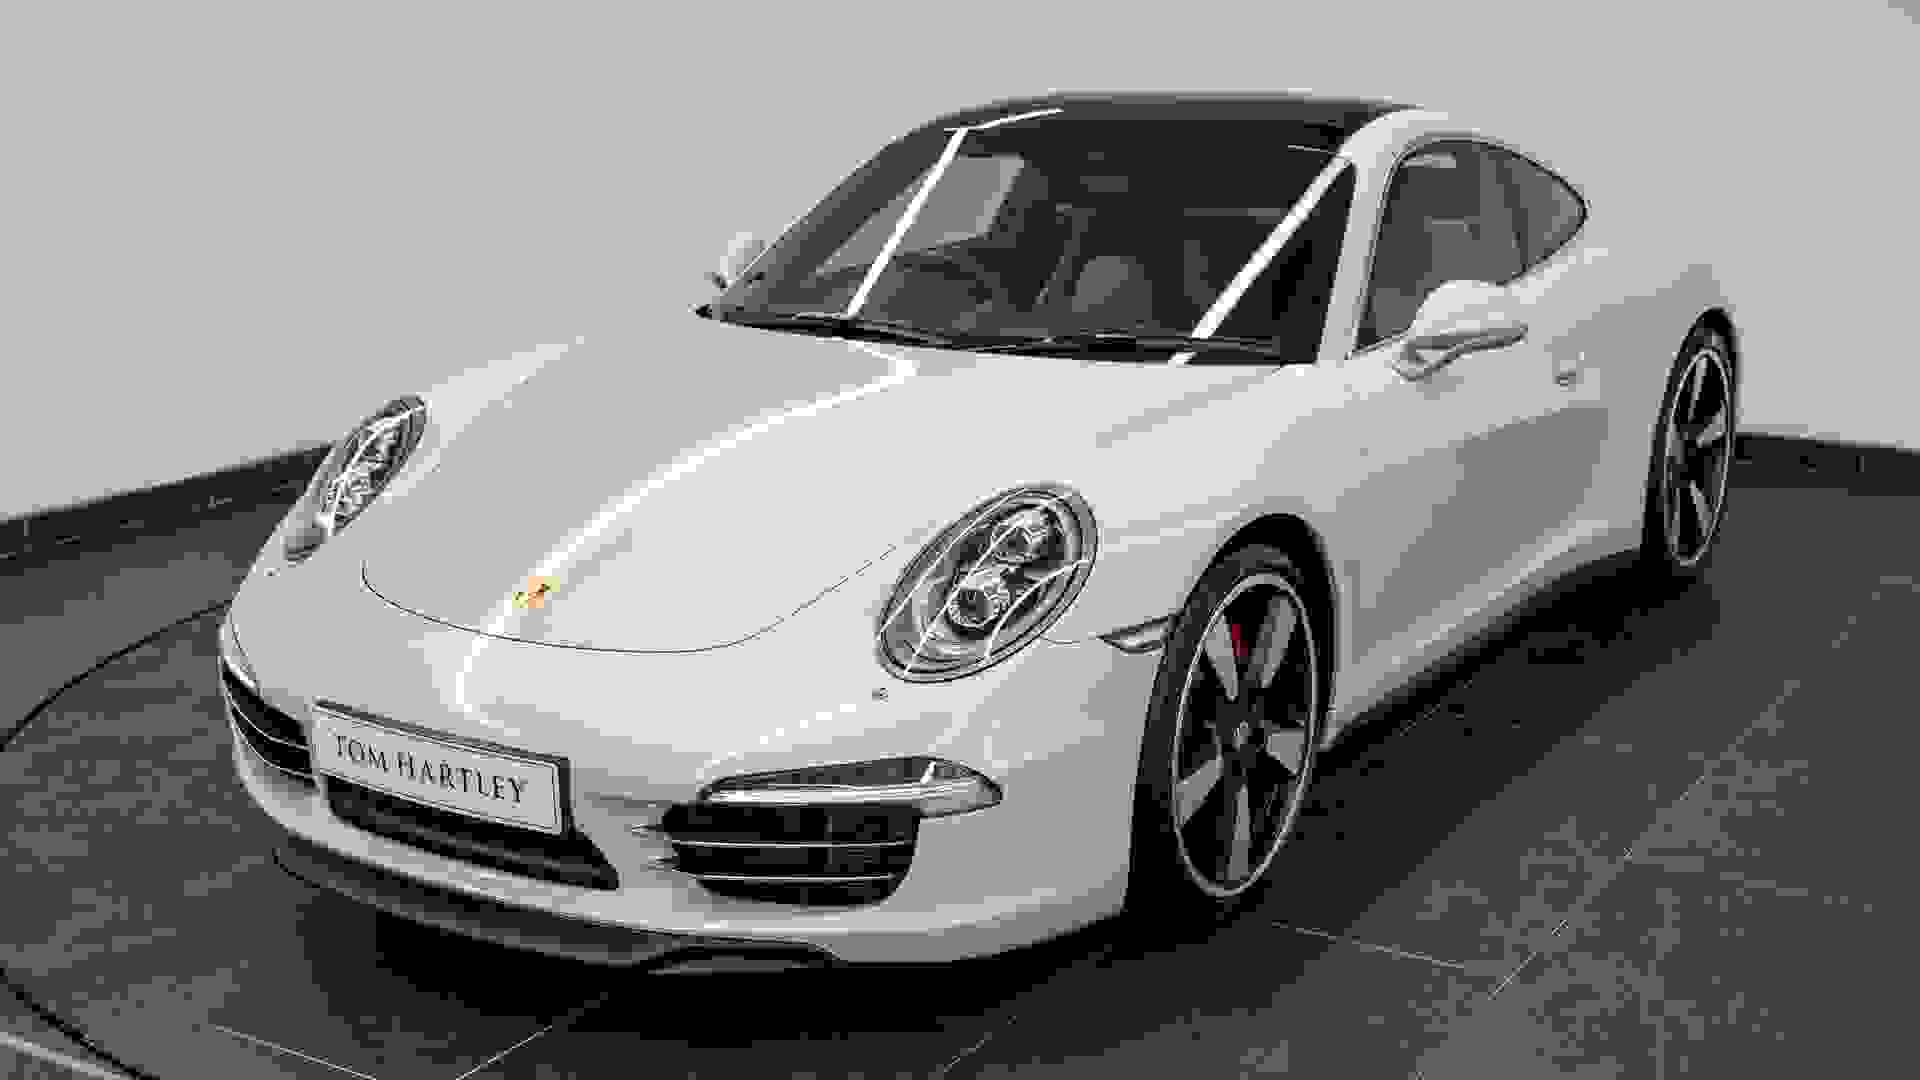 Porsche 911 Photo 3c1a308a-a0d7-46ee-b7b5-e309afb7c0d3.jpg